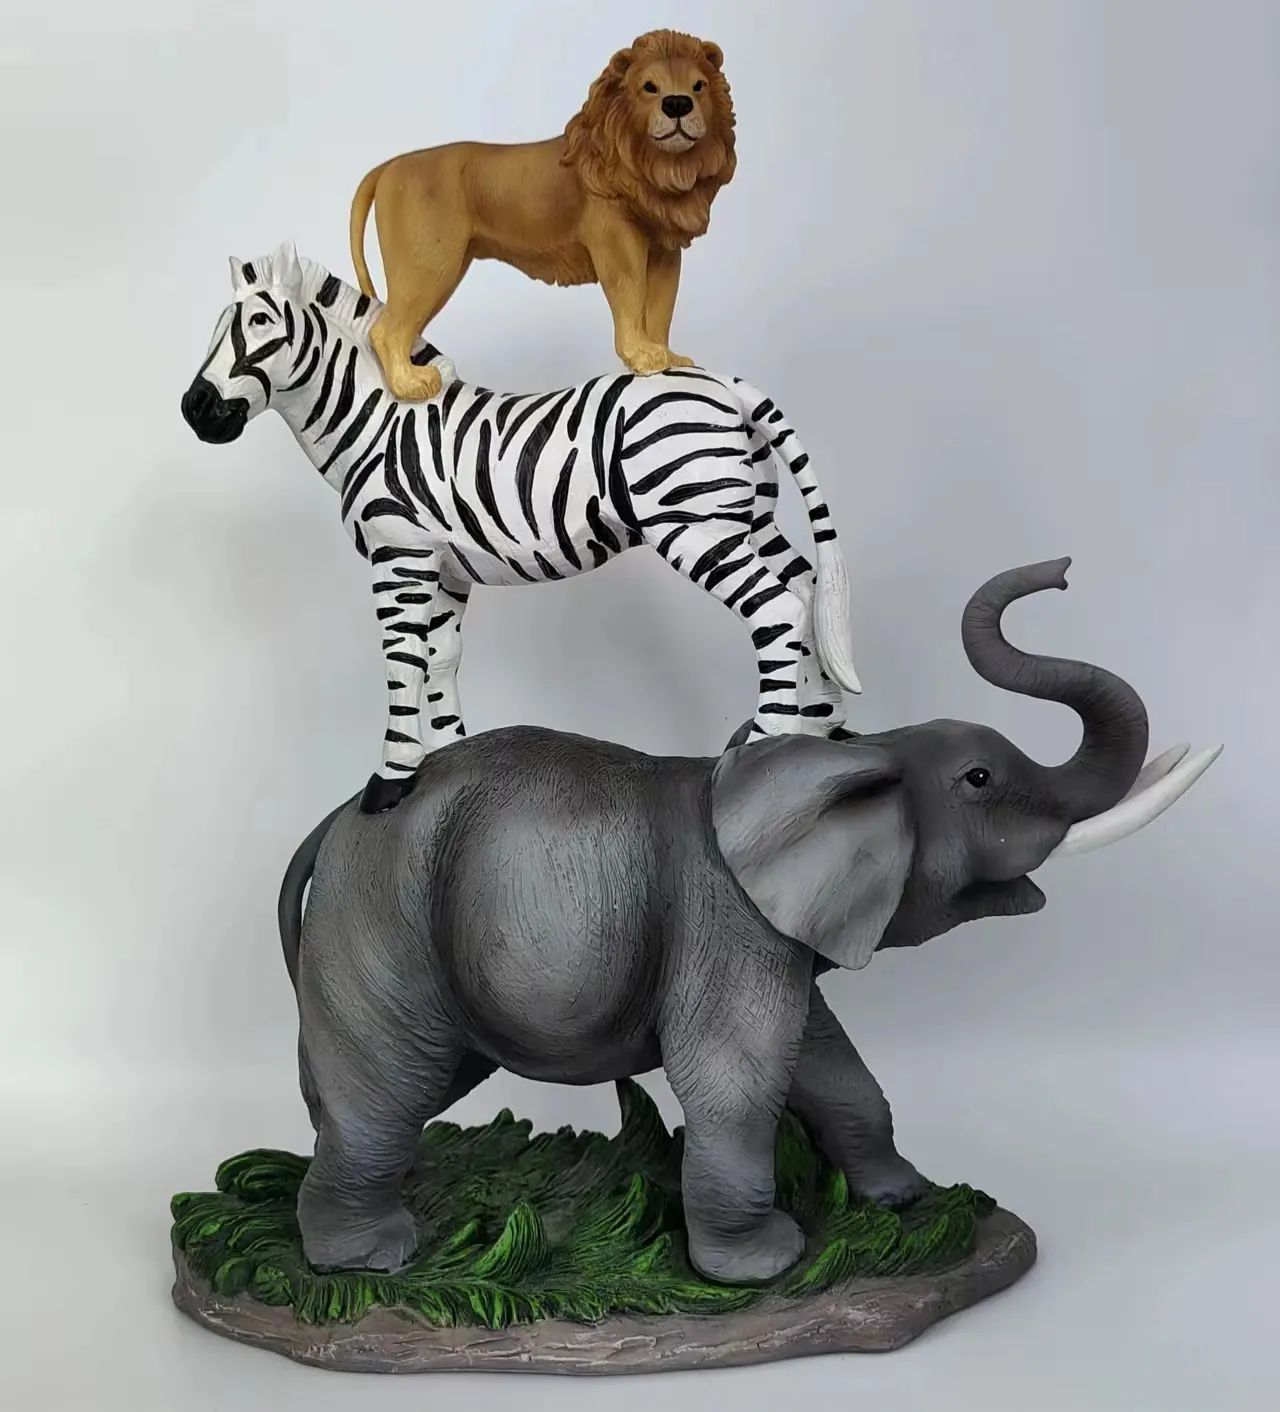 Accessori da giardino per animali scultura in resina figurina di animali Zebra tigre elefante Multi-animale per la decorazione